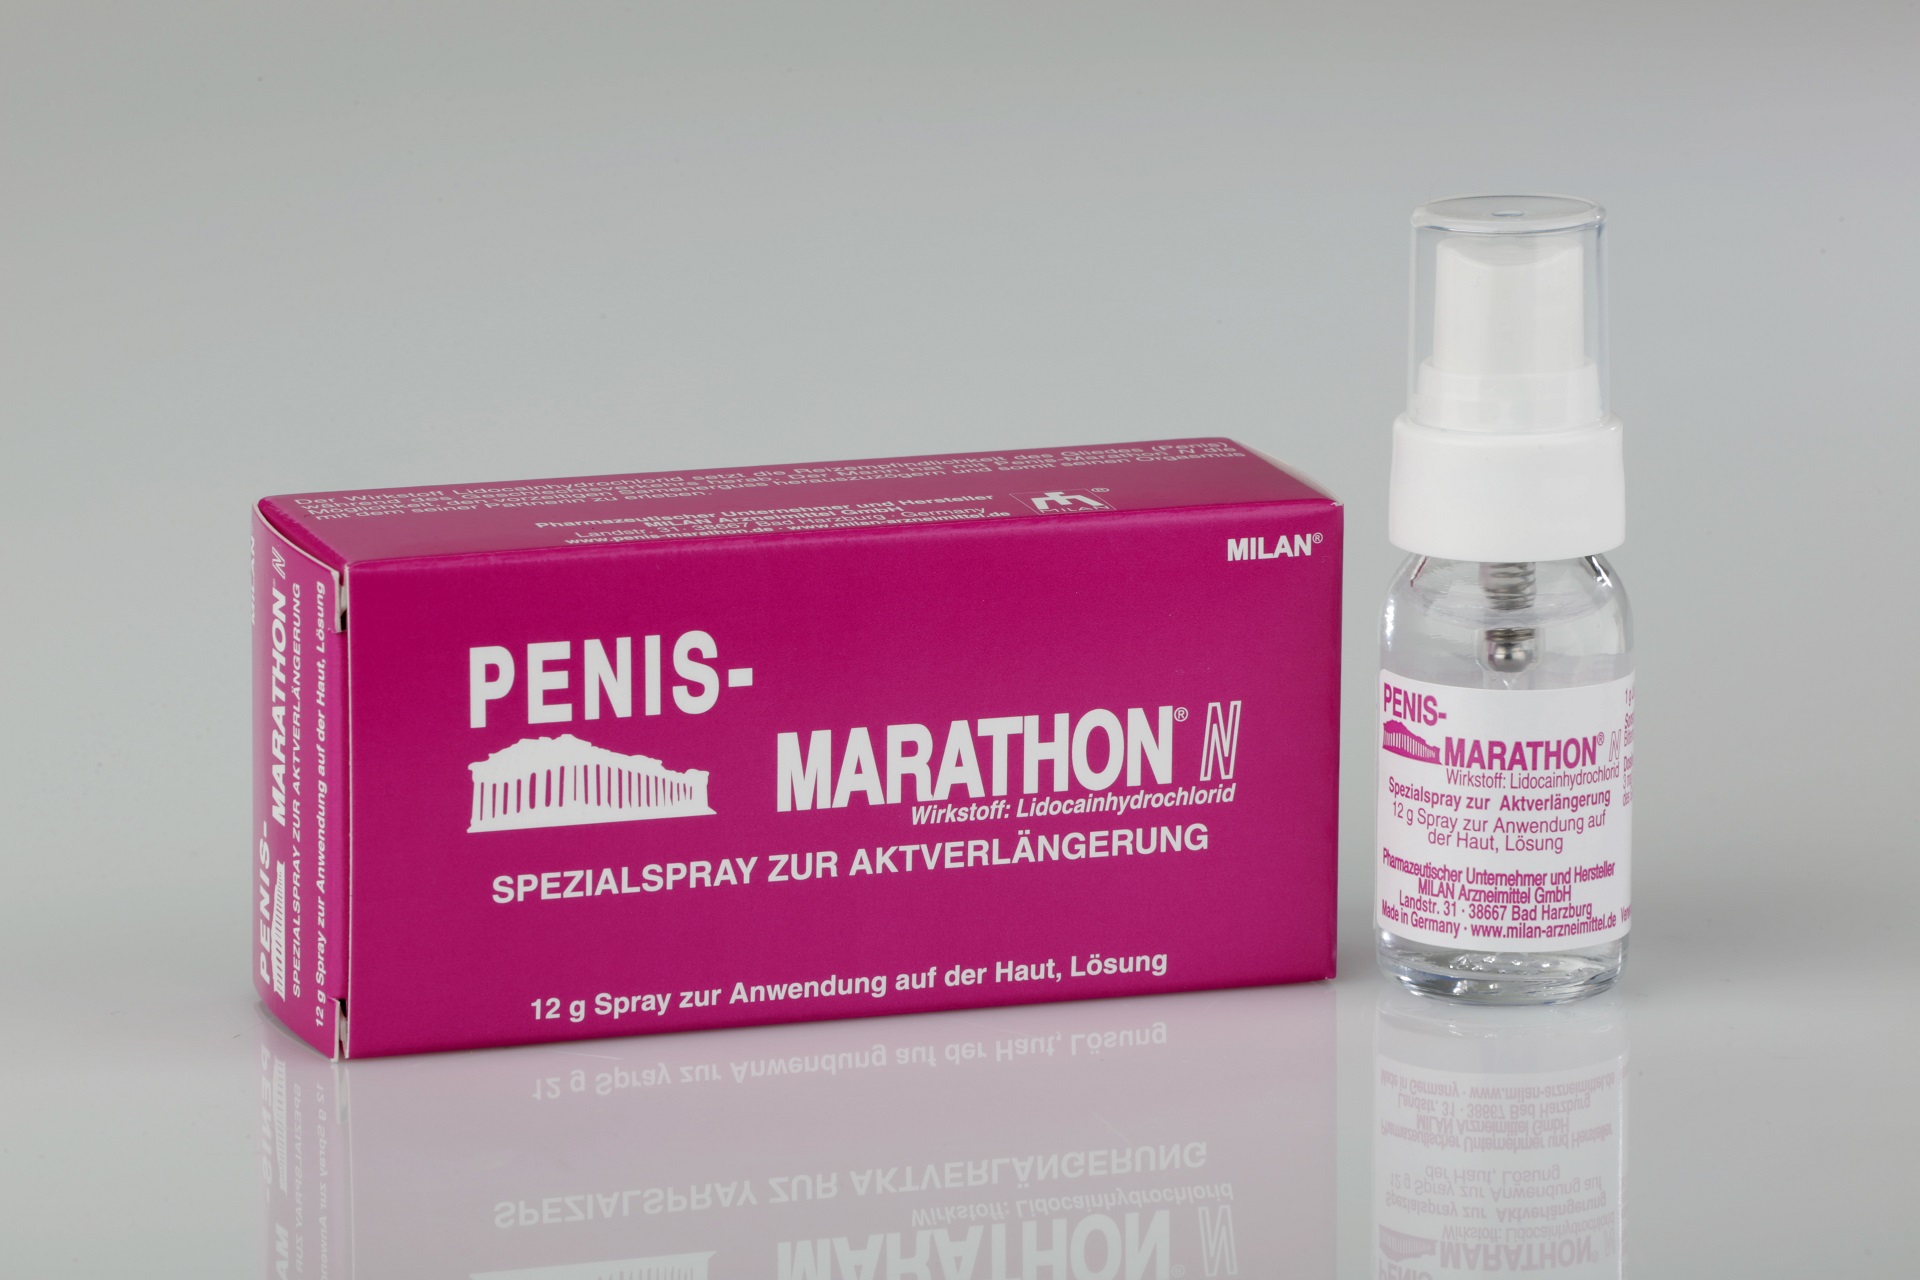 37 – MILAN® Penis-Marathon® N Spray